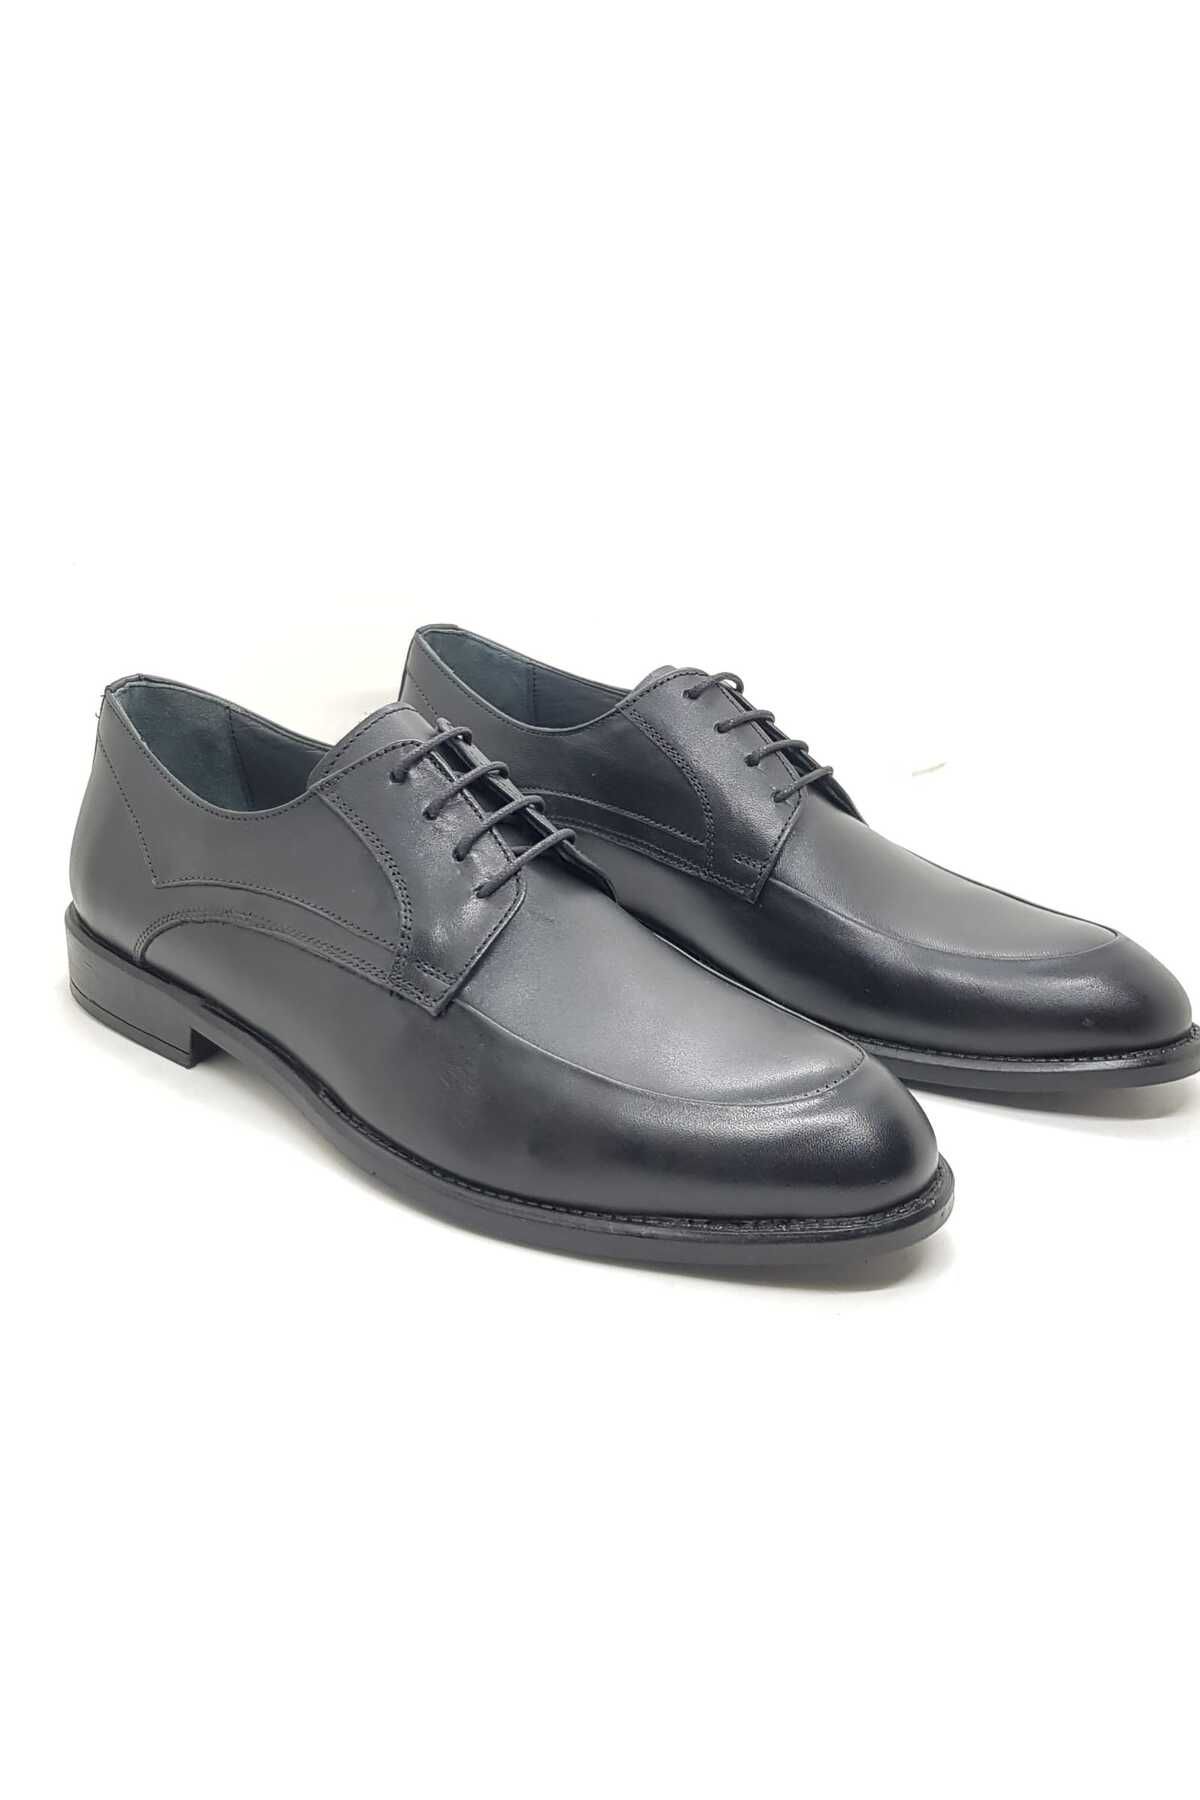 Neco siyah kauçuk taban klasik ayakkabı hakiki deri